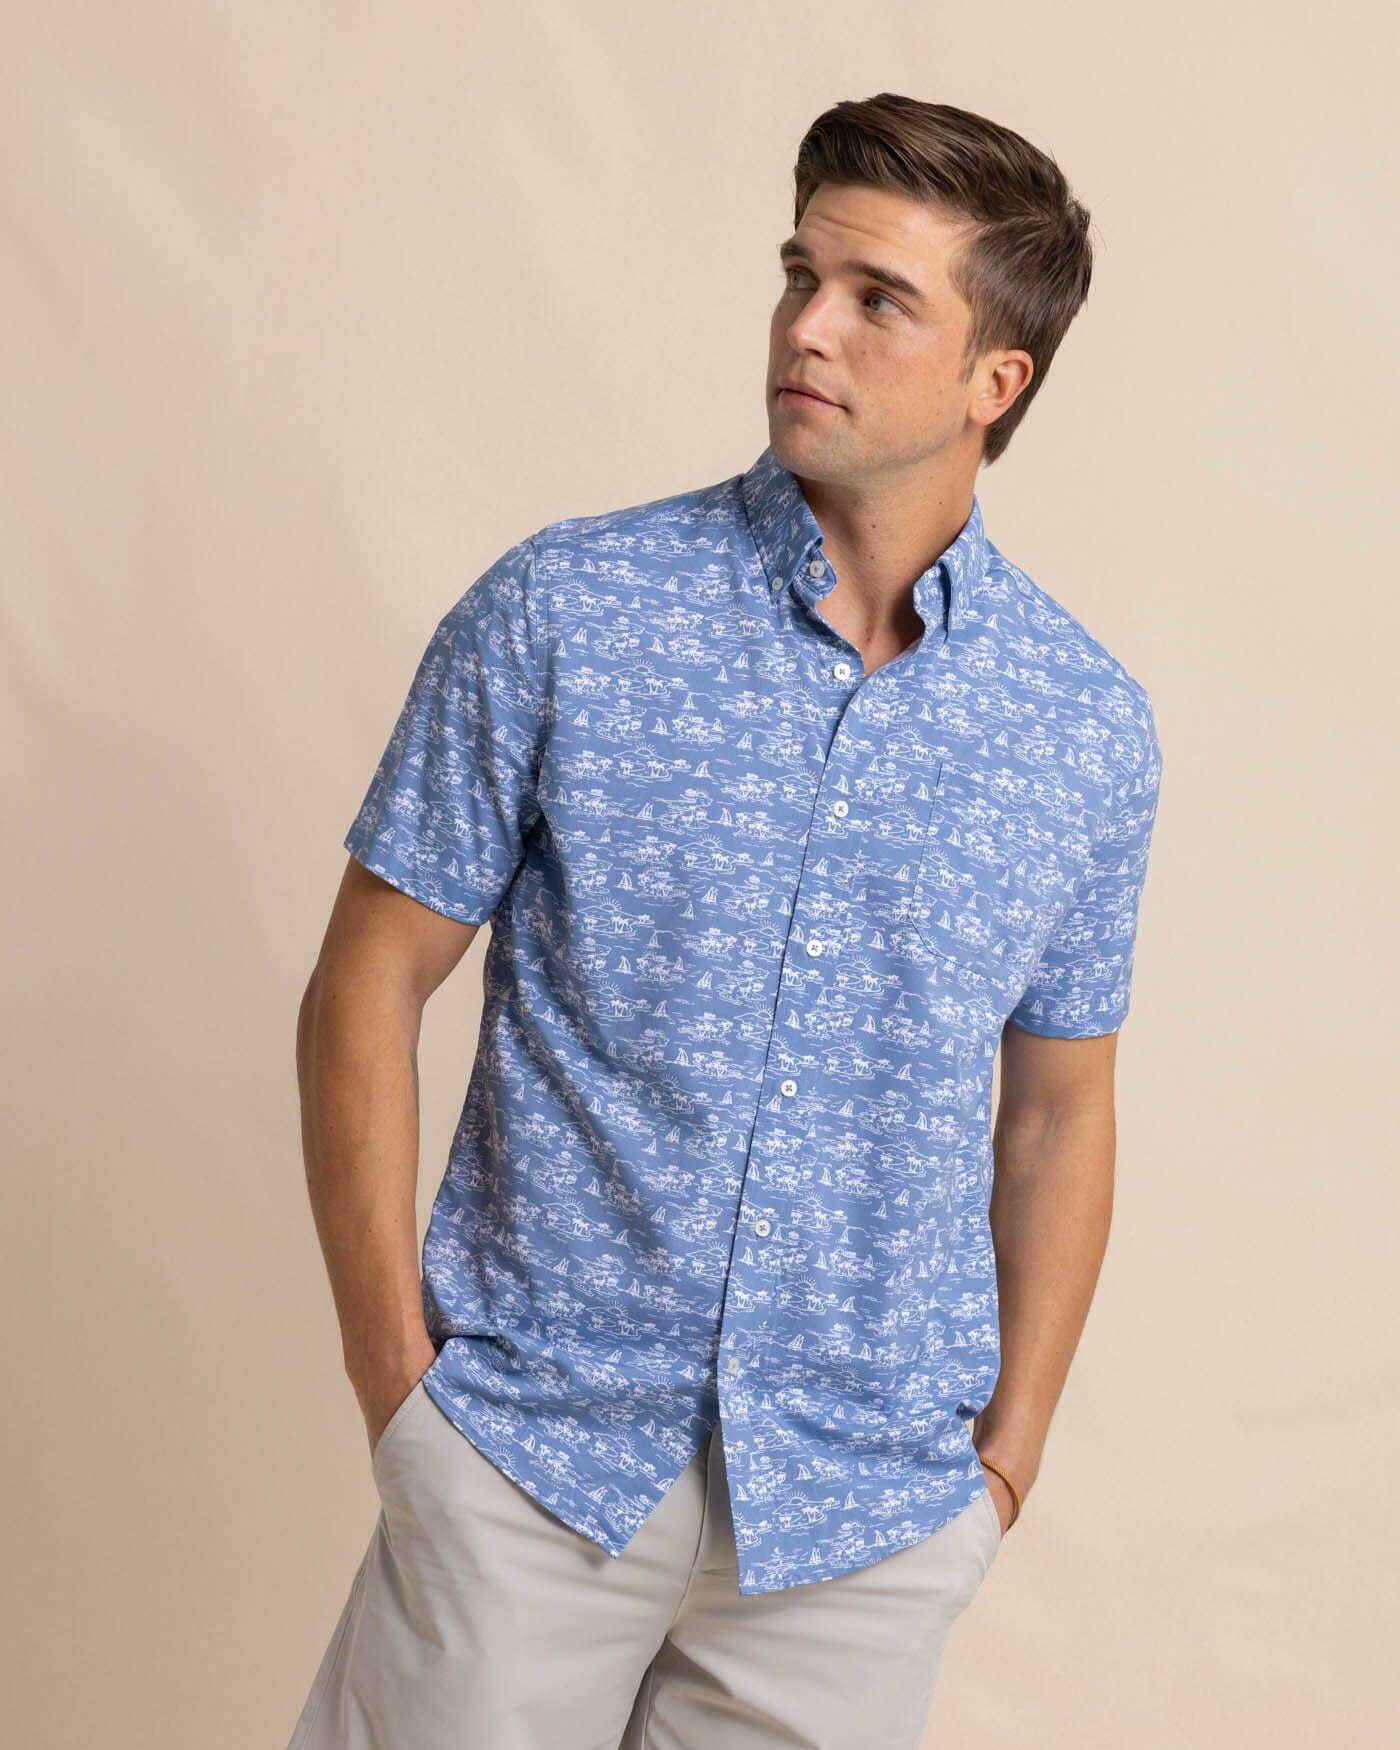 Brrr - Intercoastal Sunset Beach Short Sleeve Sport Shirt Southern Tide M / Coronet Blue